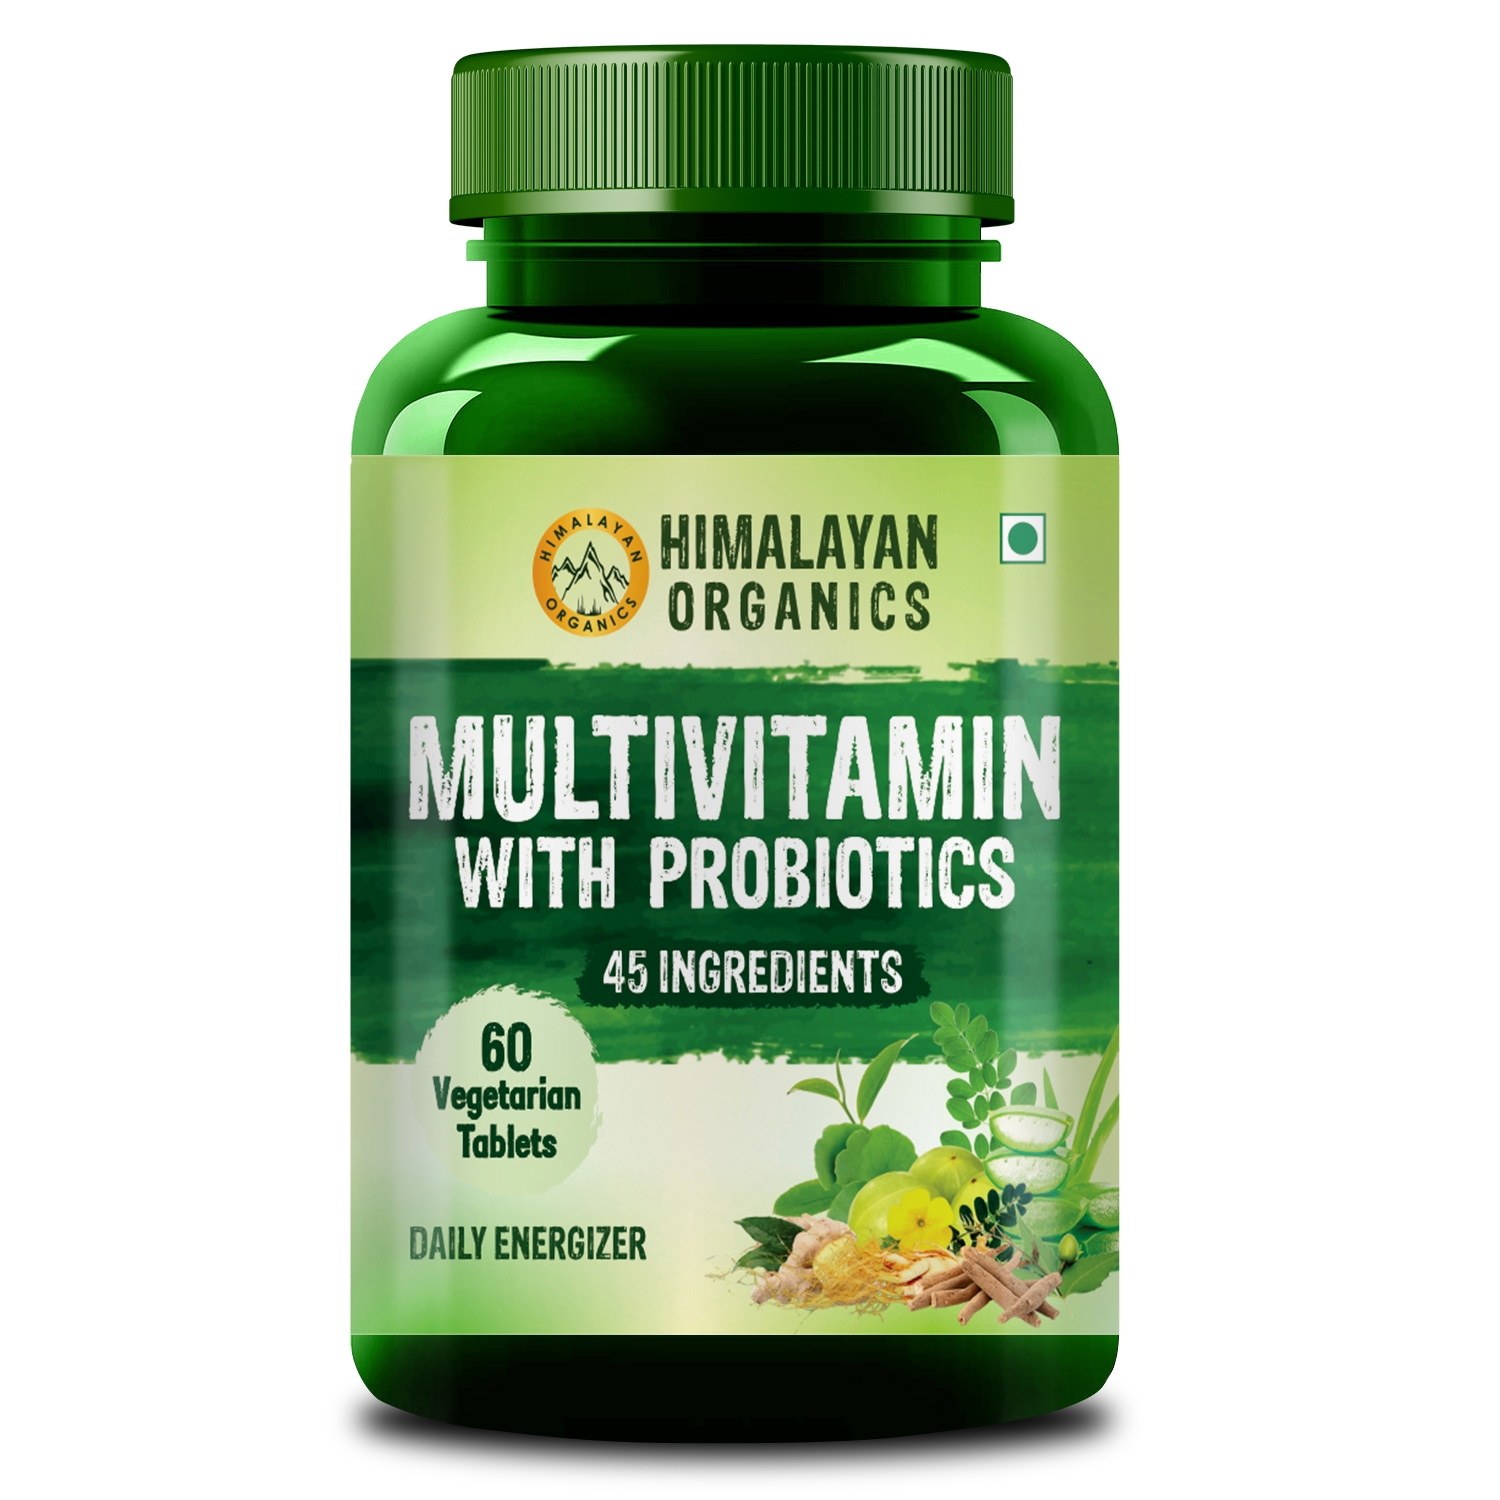 Himalayan Organics | Himalayan Organics Multivitamin with Probiotics (60 Tablets) 45 Ingredients for Men & Women with Vitamin C, D, E, B3, B12, Zinc, Giloy & Biotin